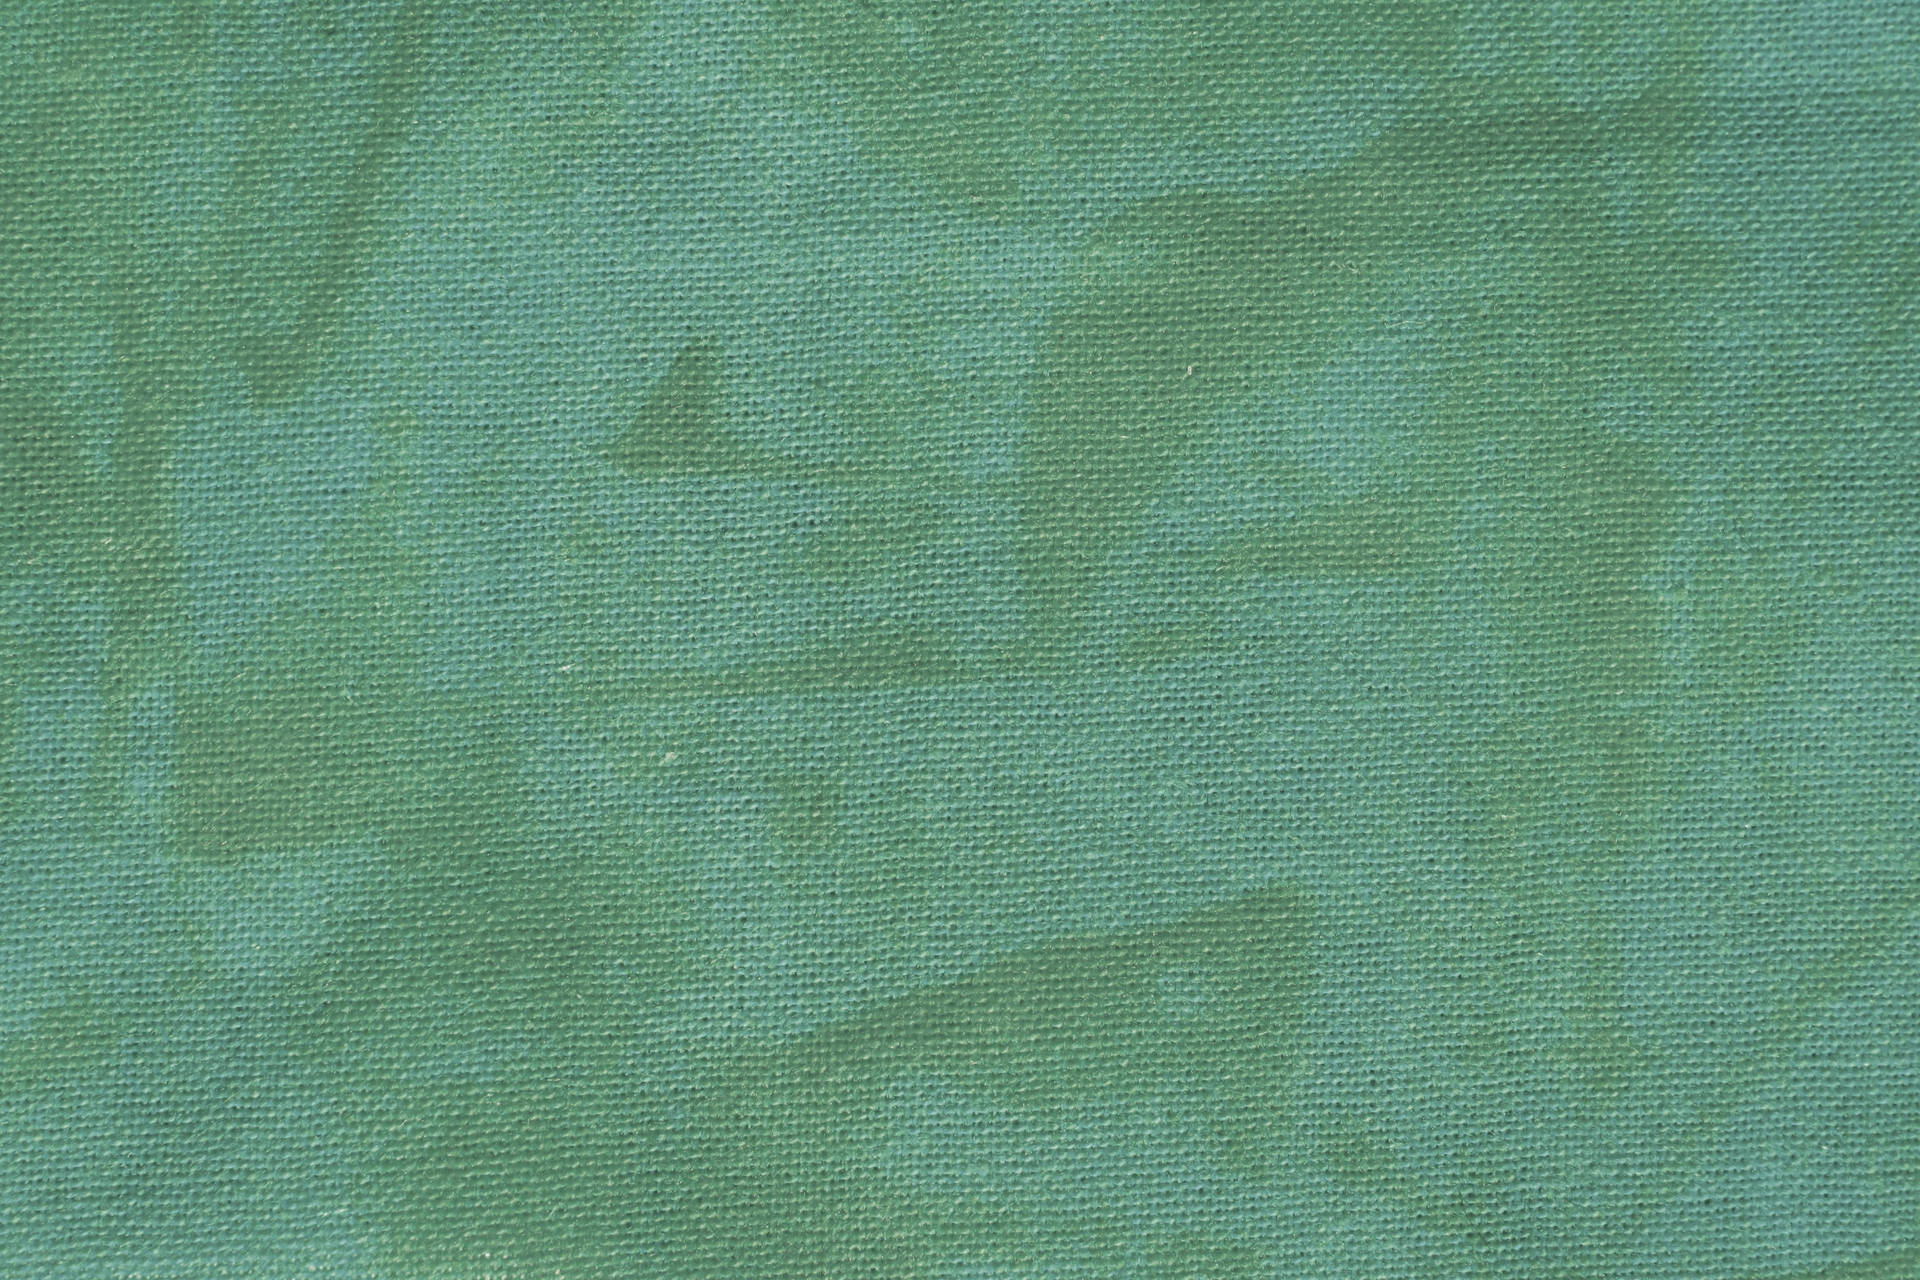 Sage Green Canvas Texture Background